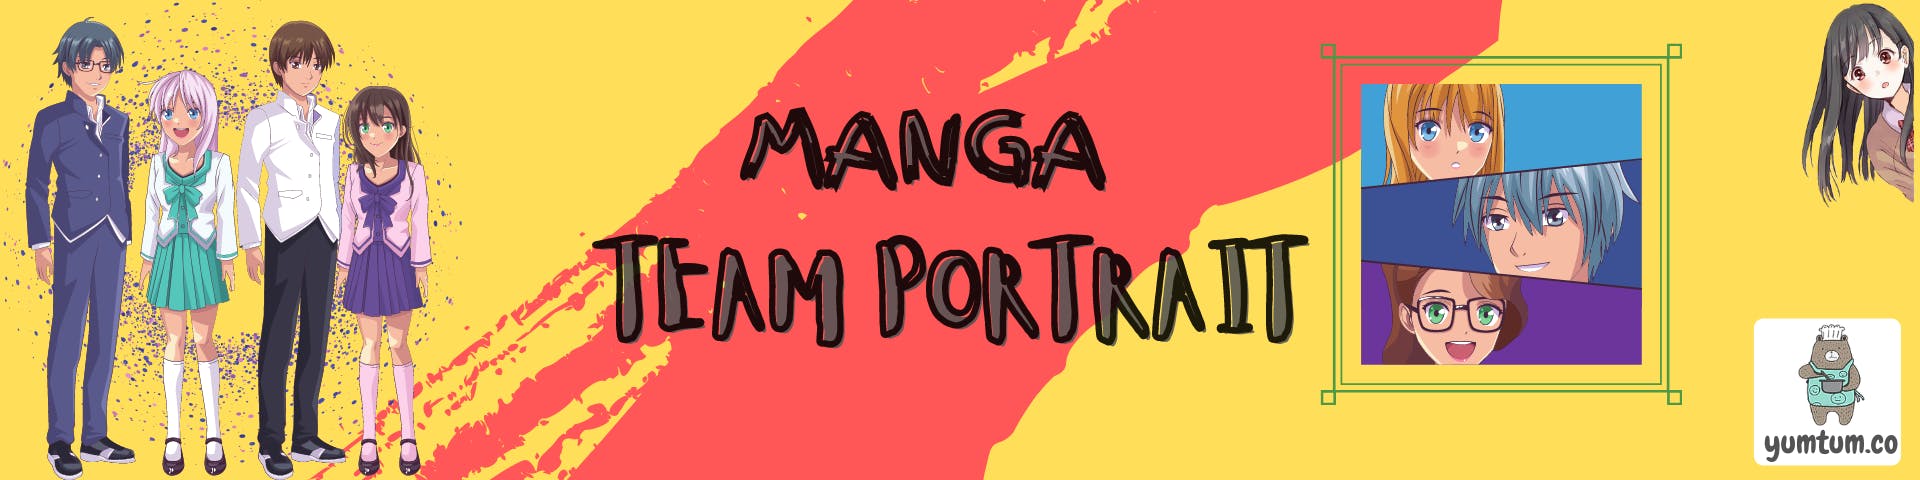 Manga Portraiy (1).png